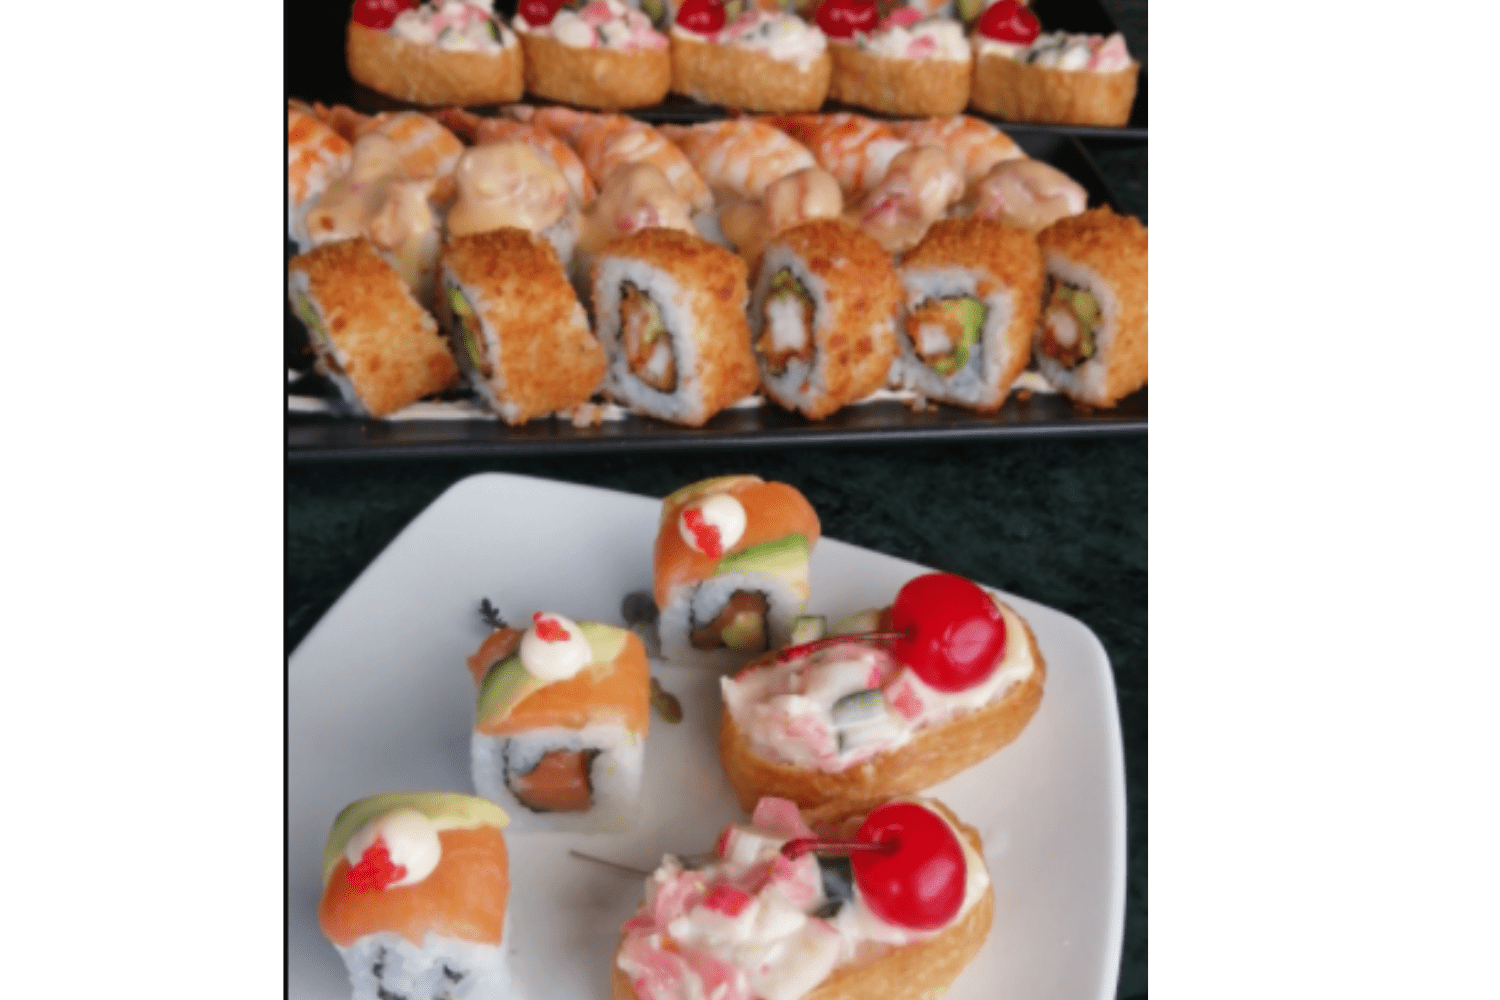 Co.fi Midrand sushi platter